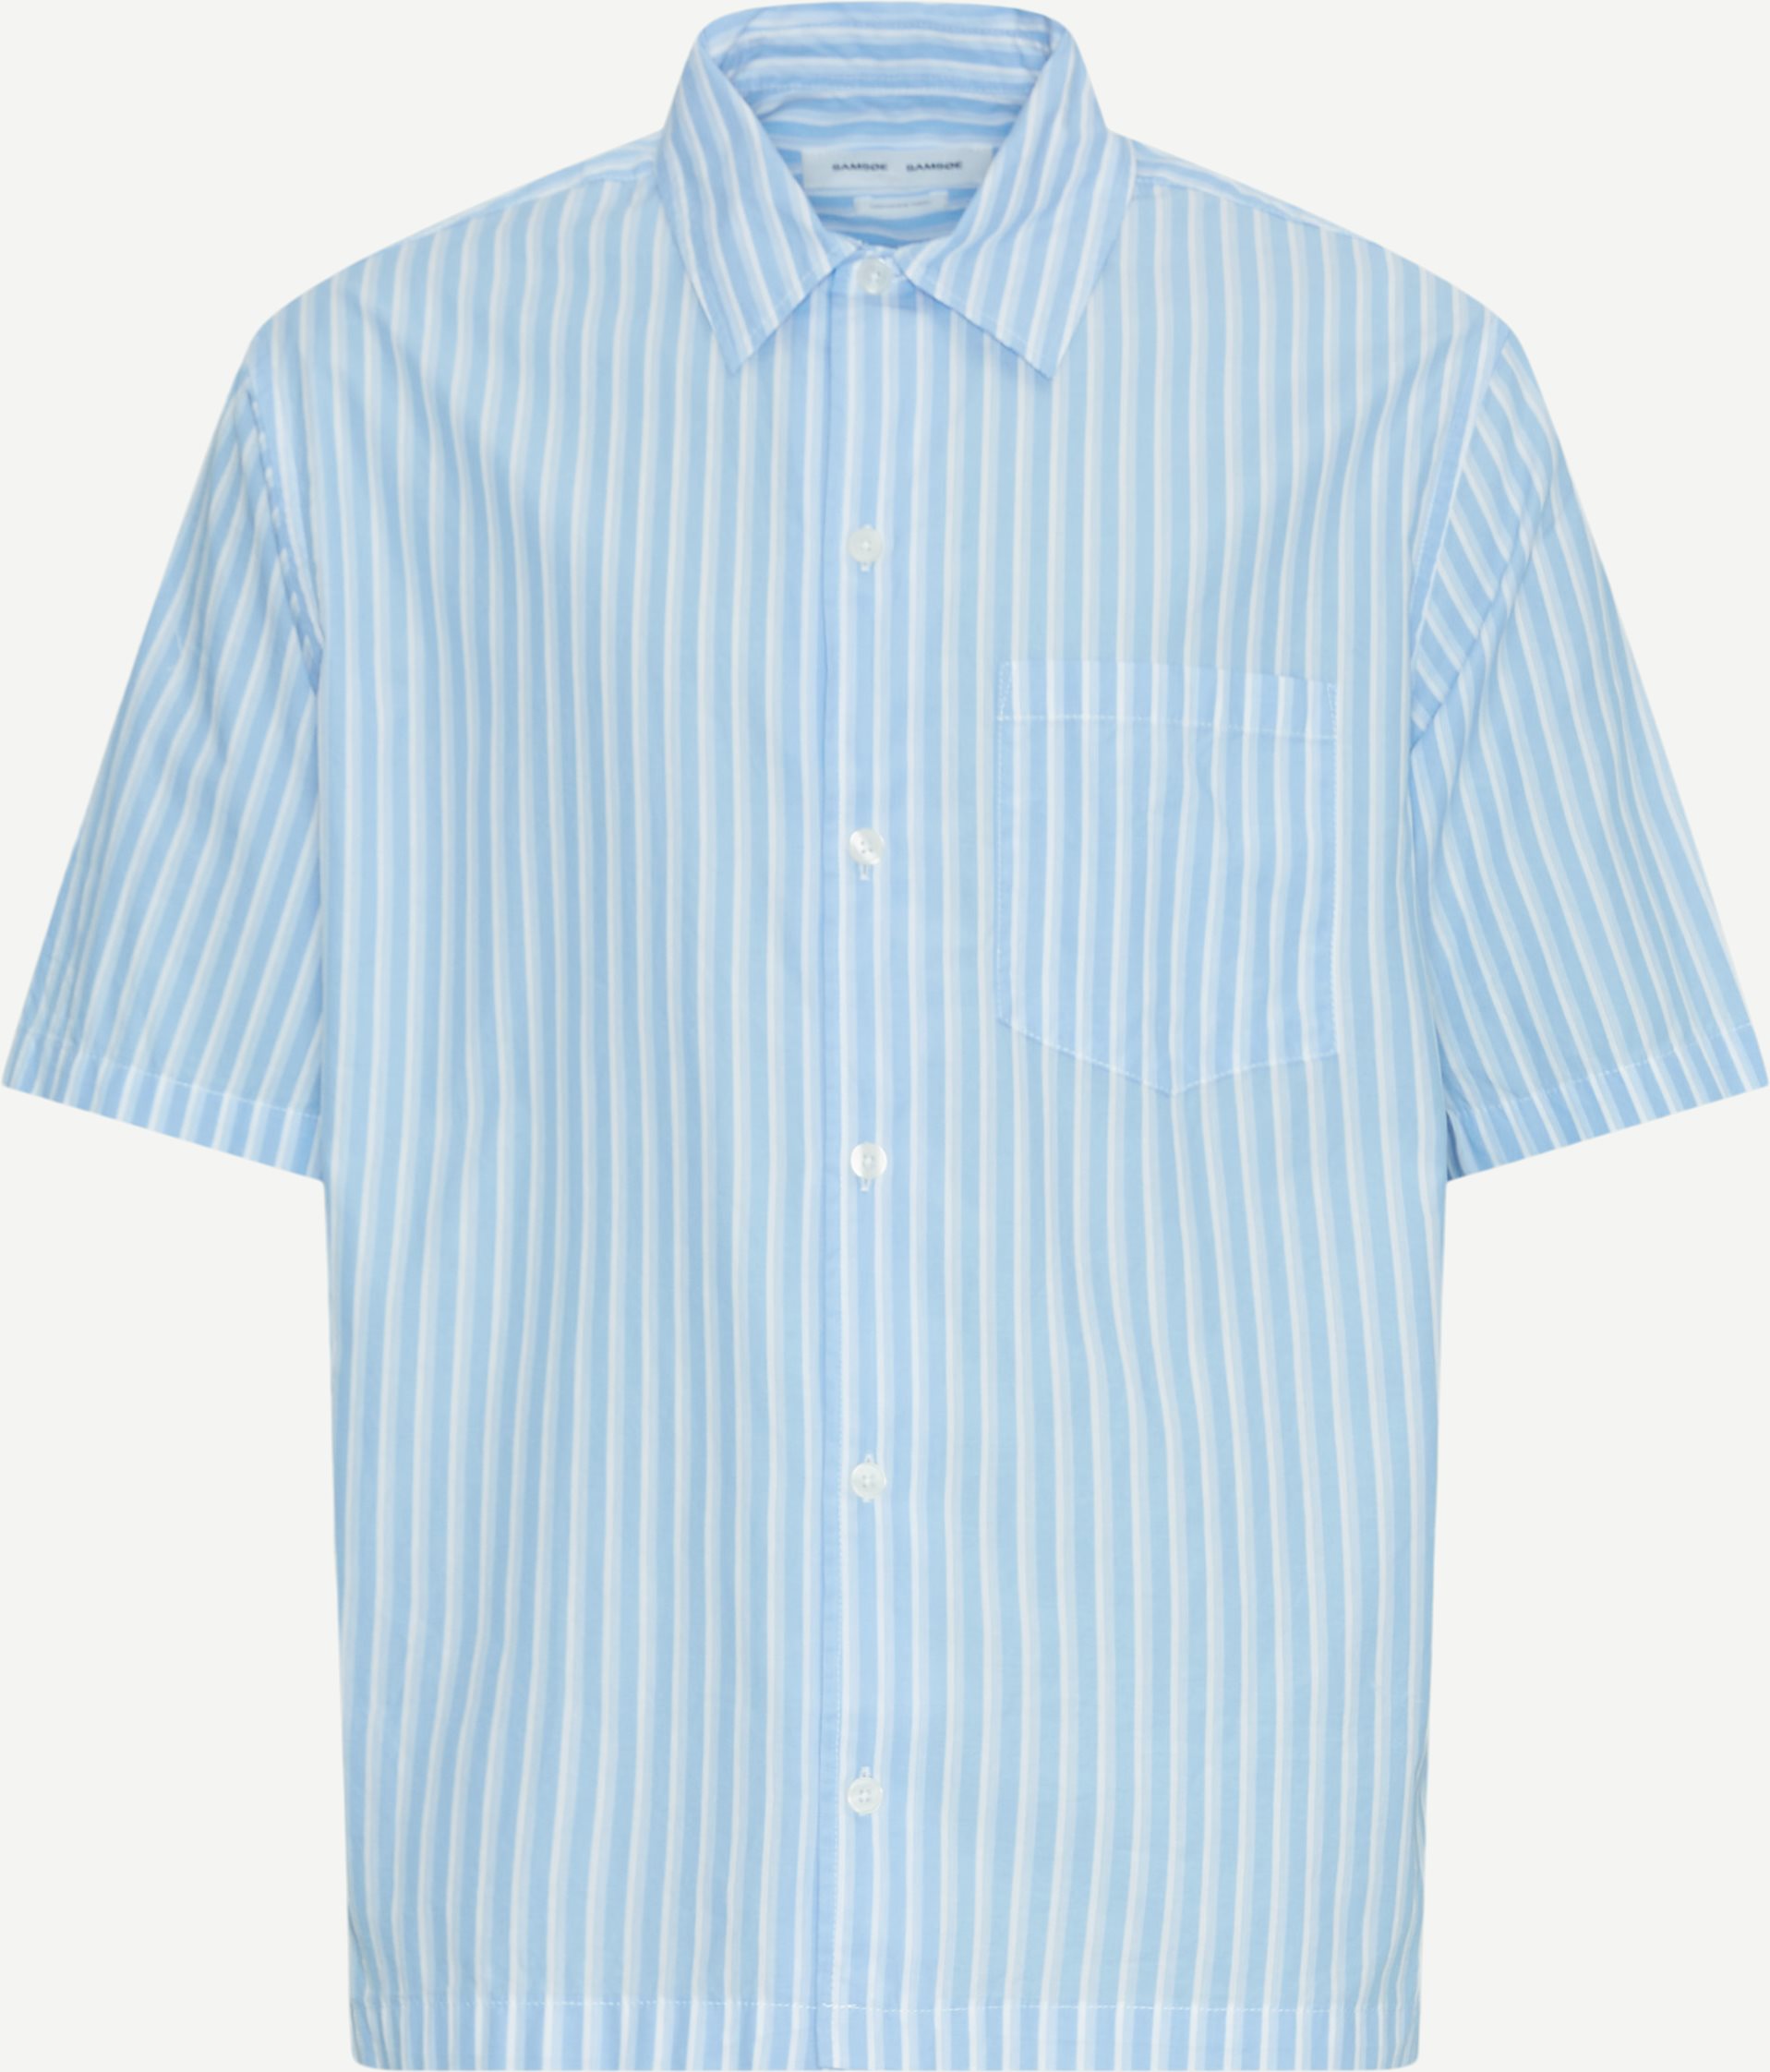 Samsøe Samsøe Short-sleeved shirts SAAYO P SHIRT 15139 Blue